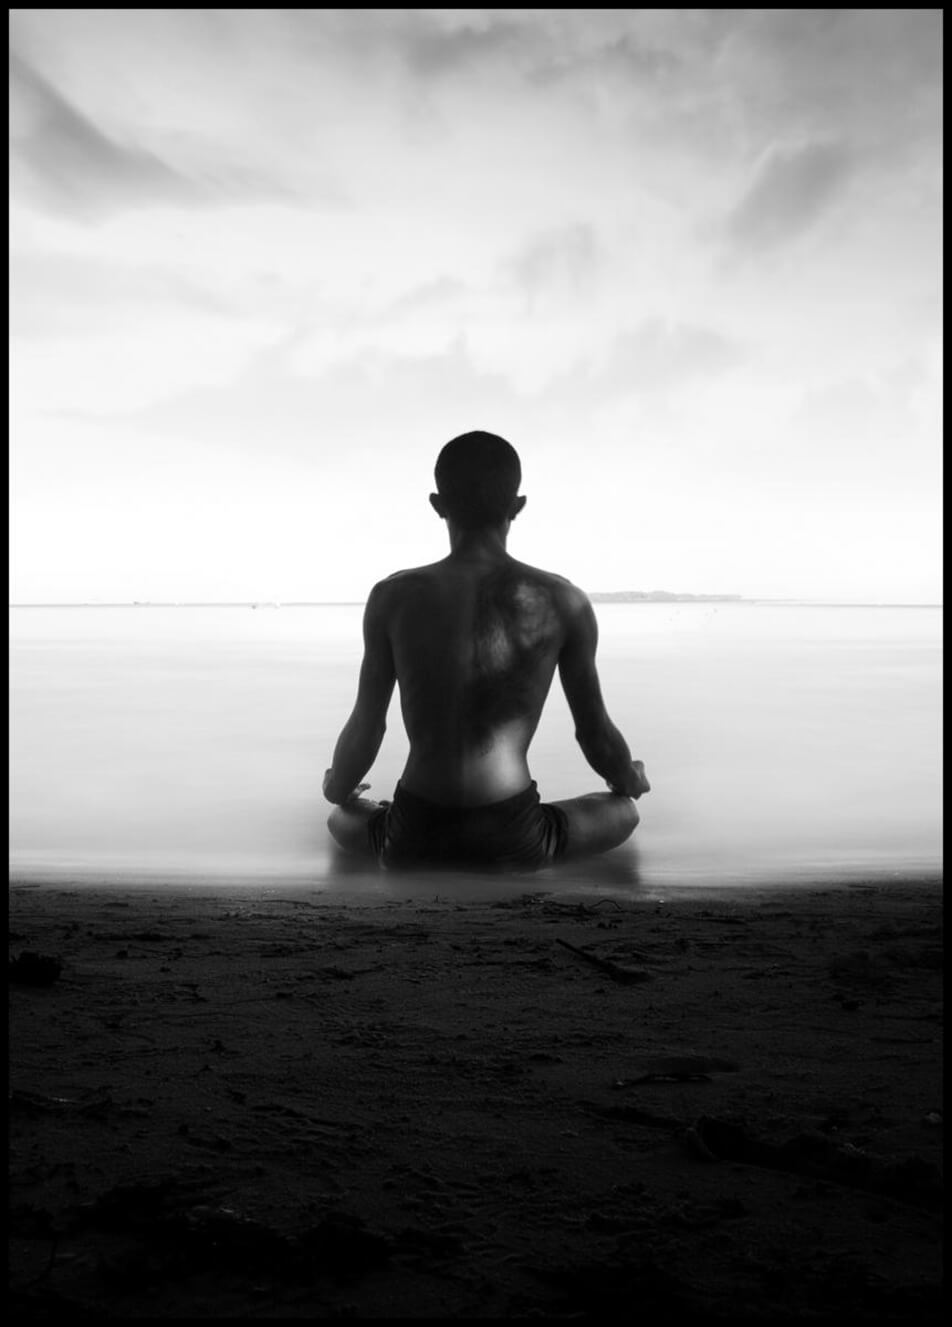 Juliste esittää valokuvaa miehestä, joka meditoi rantaviivan tuntumassa